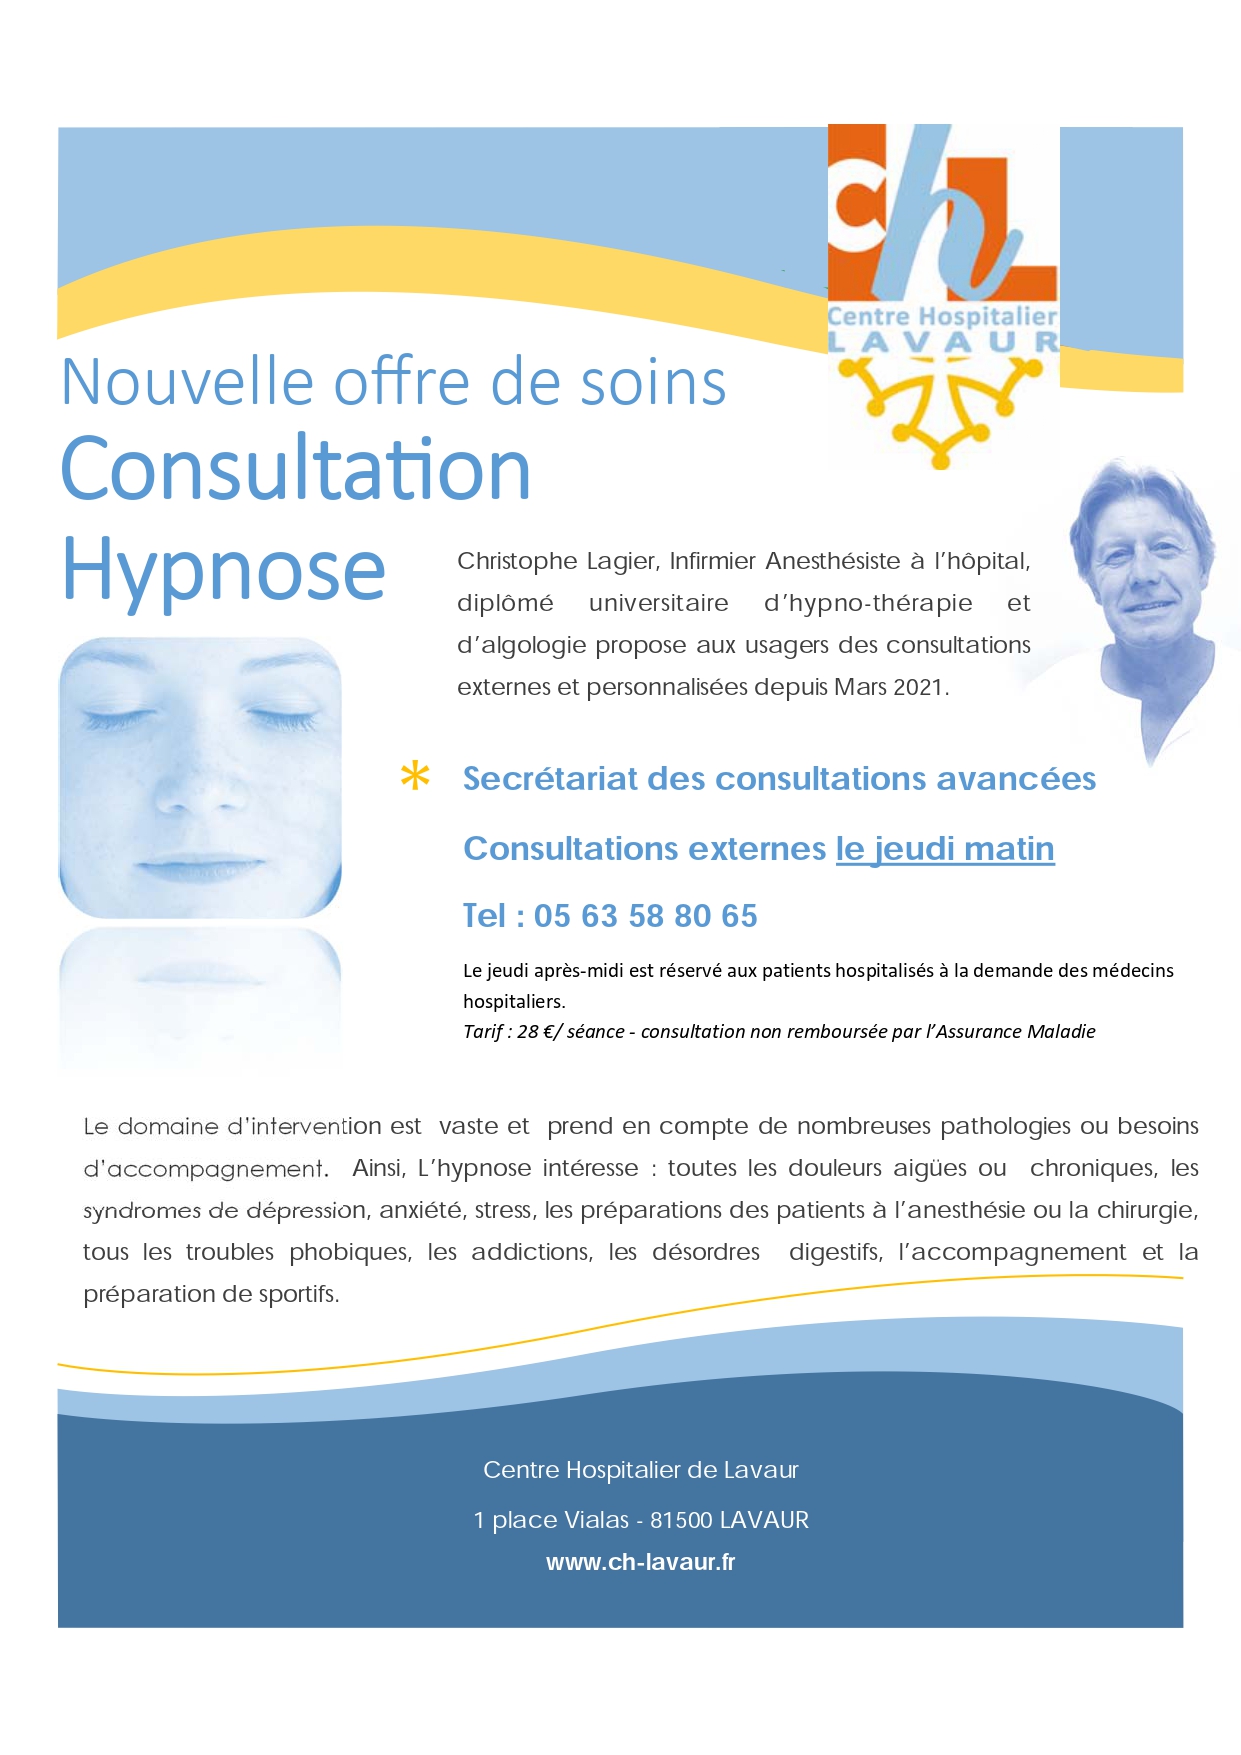 Consultation hypnose 2021 V3 Centre Hospitalier de Lavaur